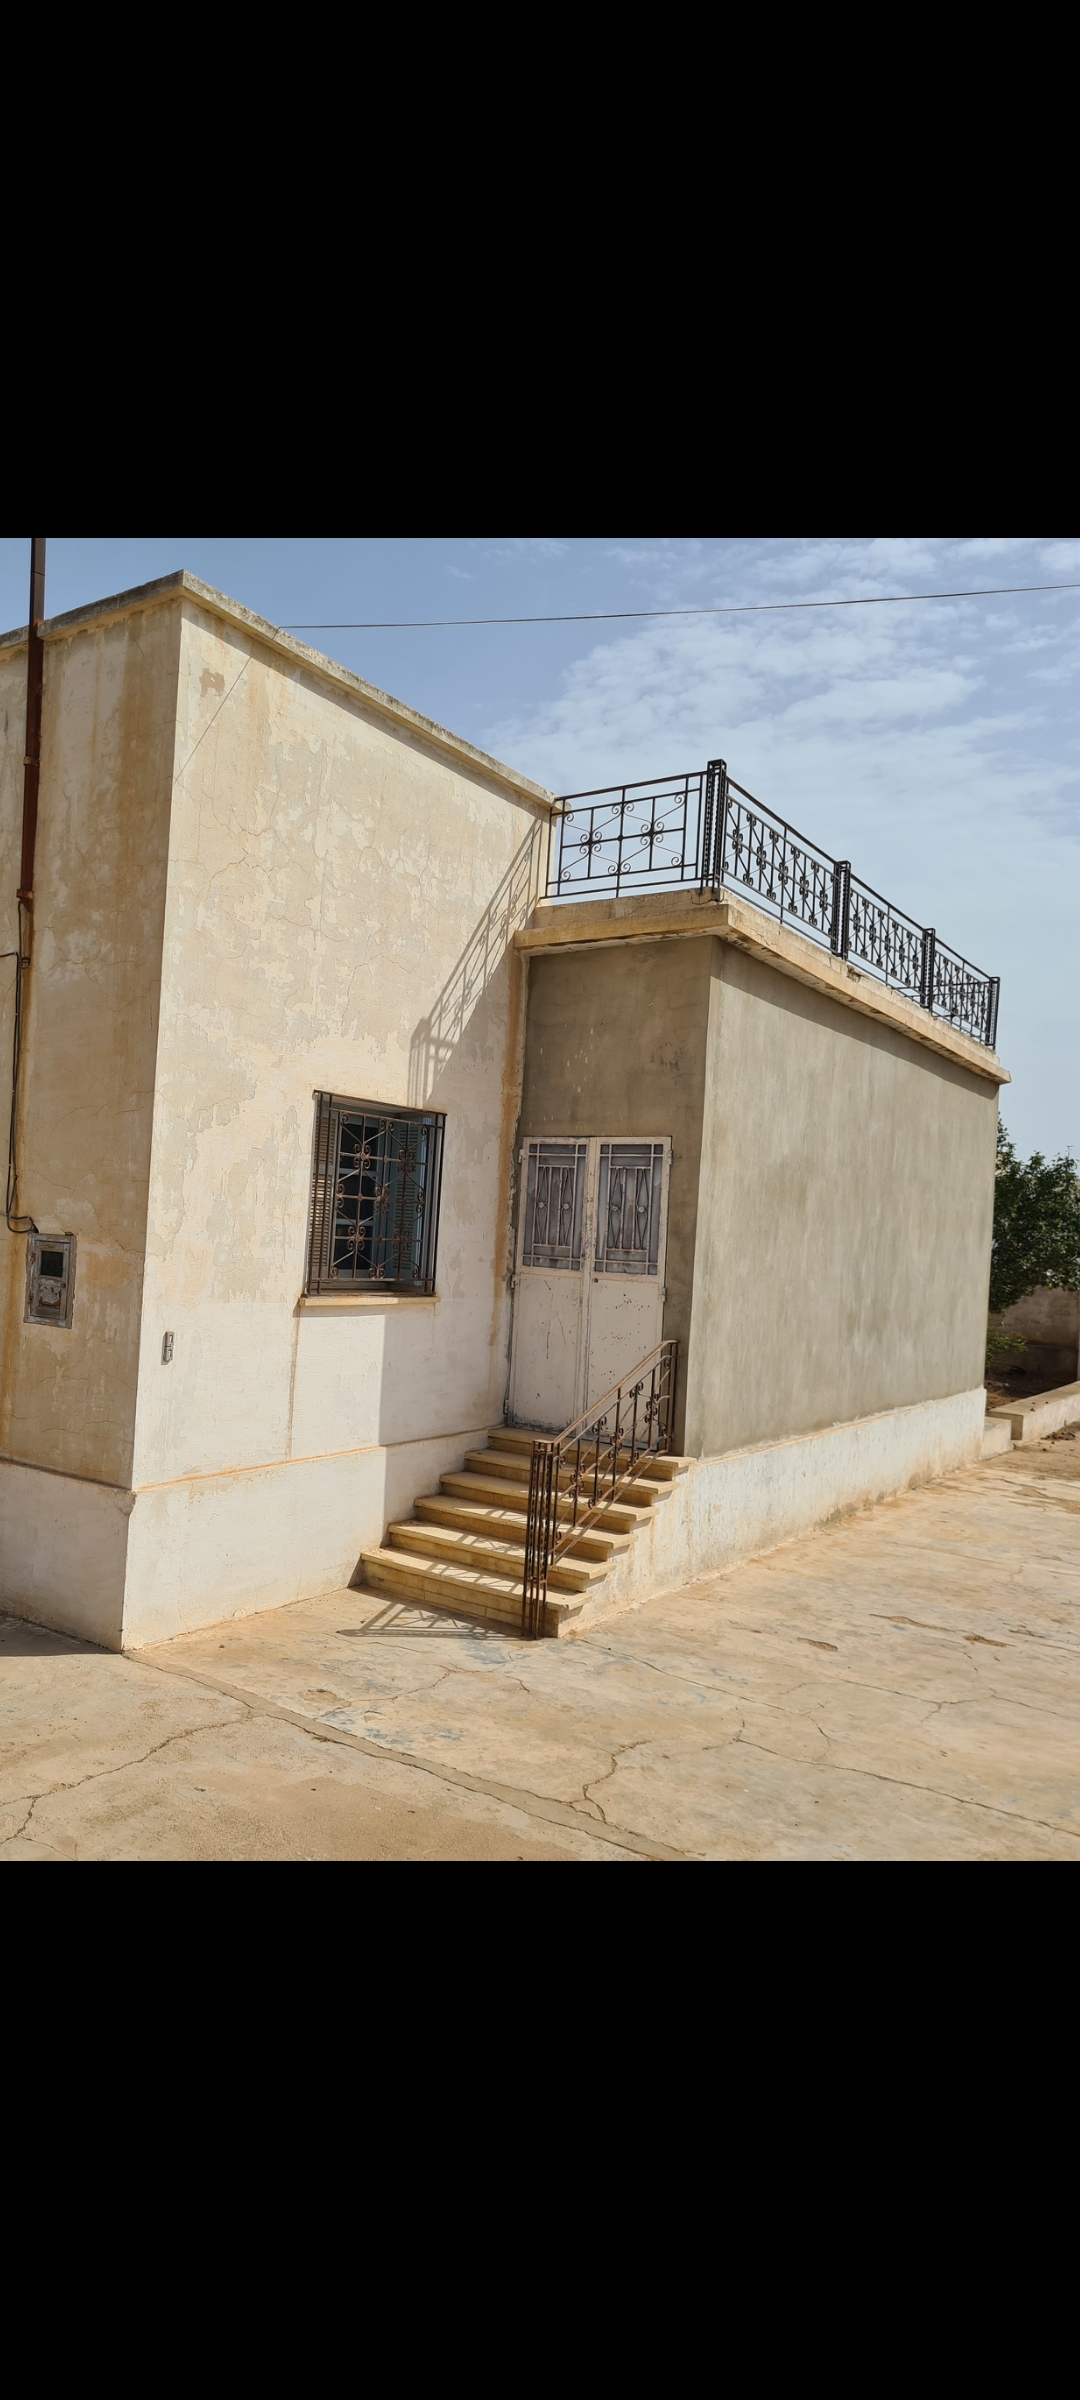 Sakiet Ezzit Merkez Chihya Location Surfaces Grande maison pour dpt  bien situe chihia sfax